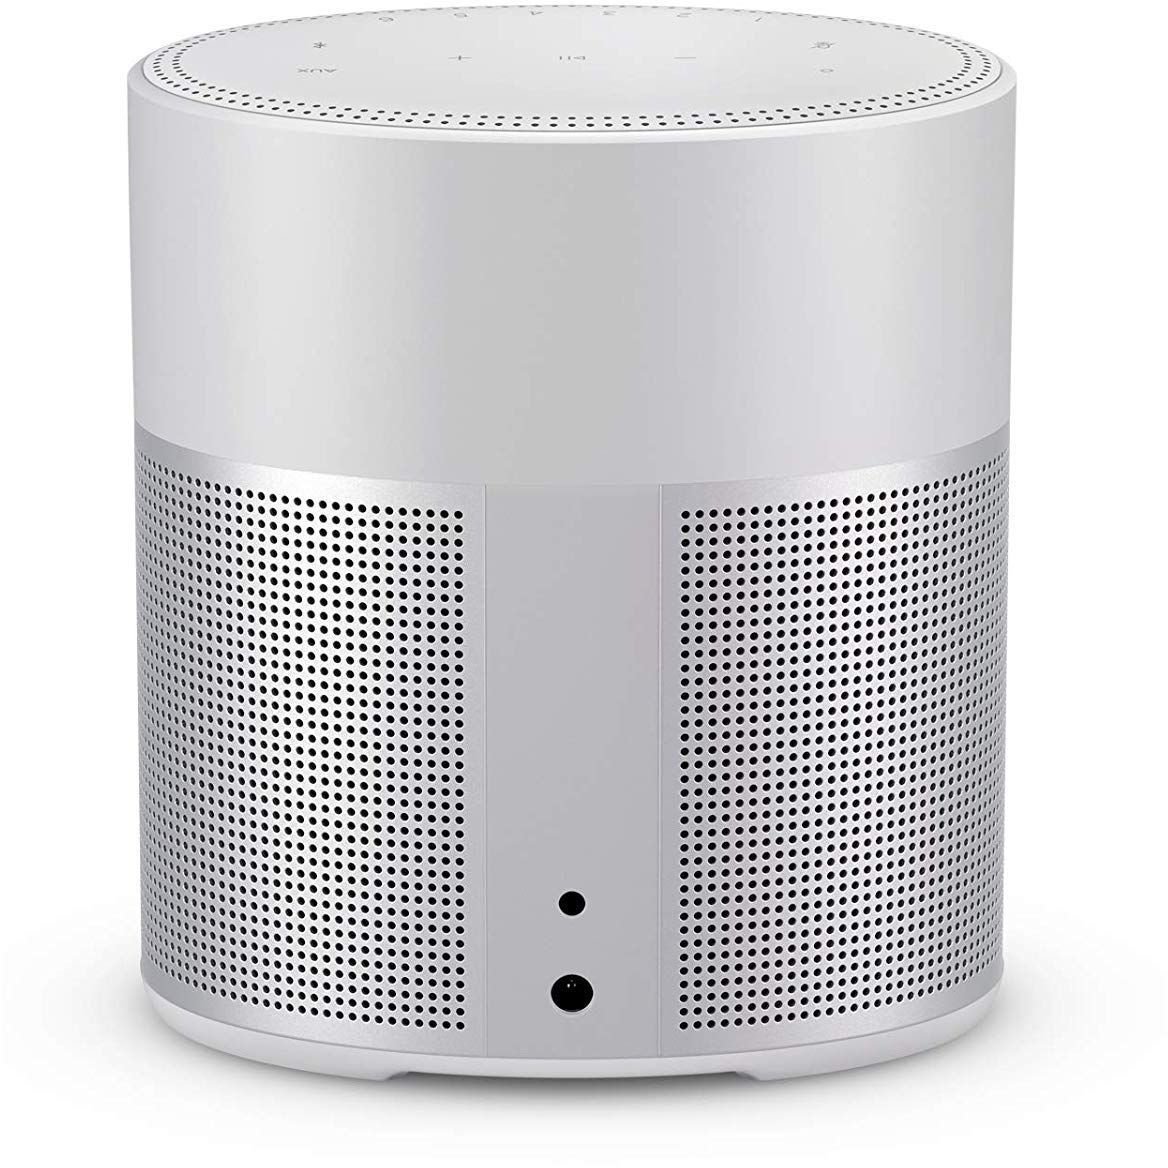 Sistema de sonido para el hogar Bose Home Speaker 300 Silver